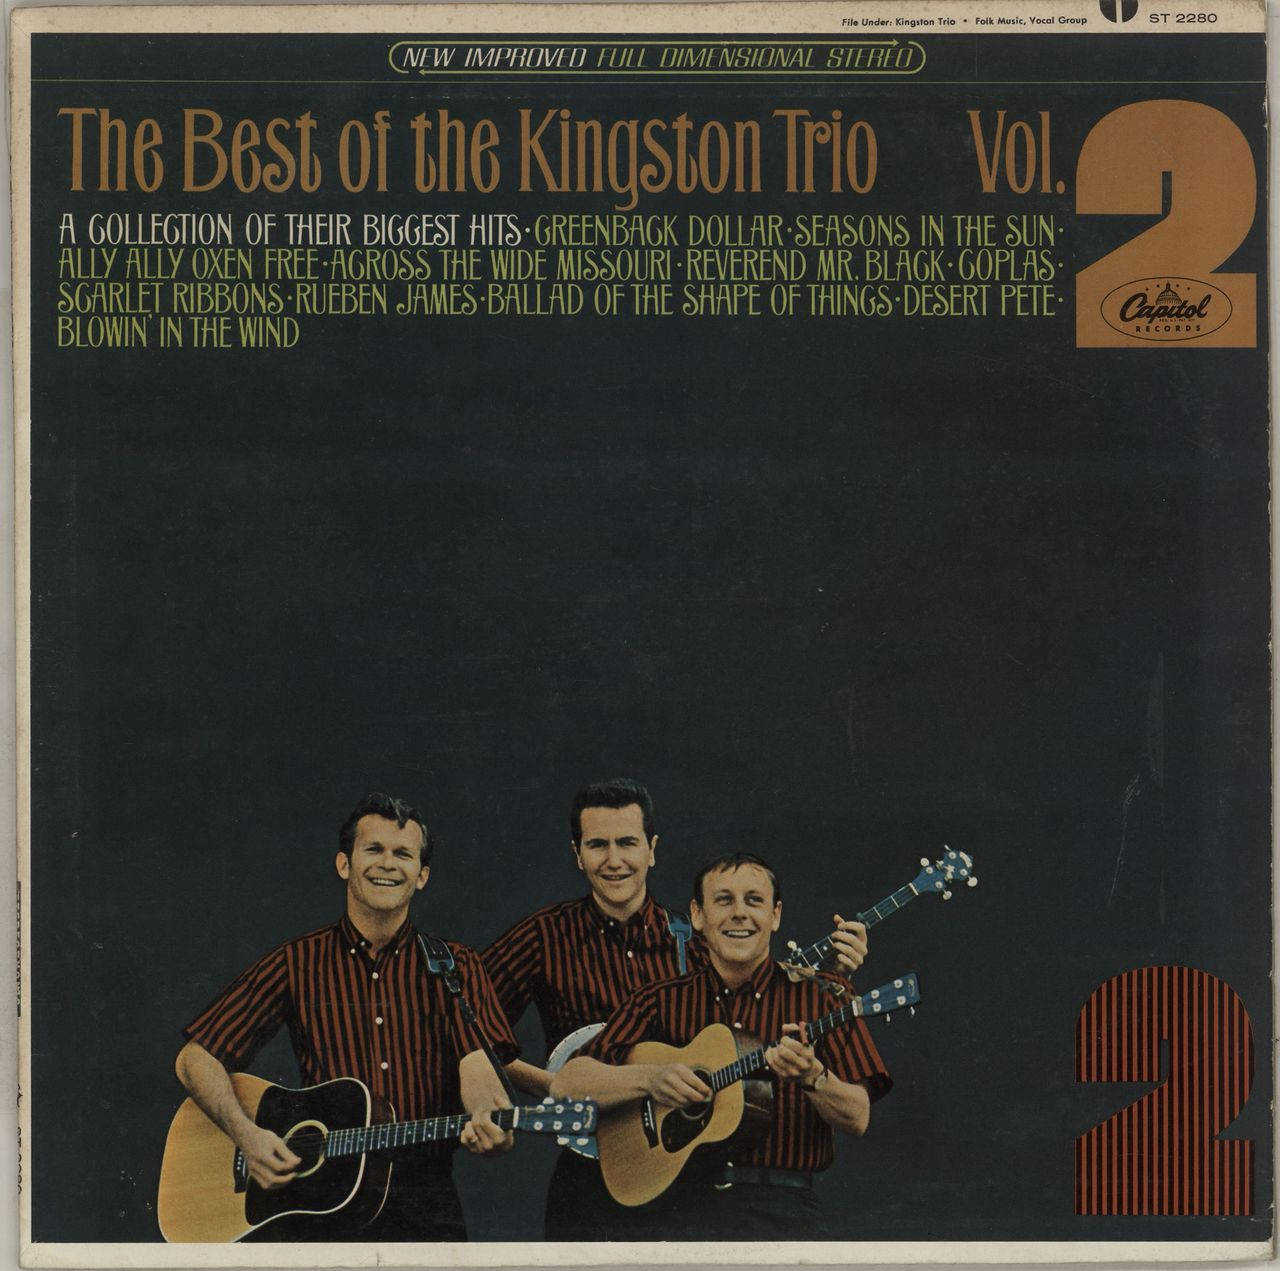 Den Bedste Kingston Trio Volume 2 Album Cover Wallpaper